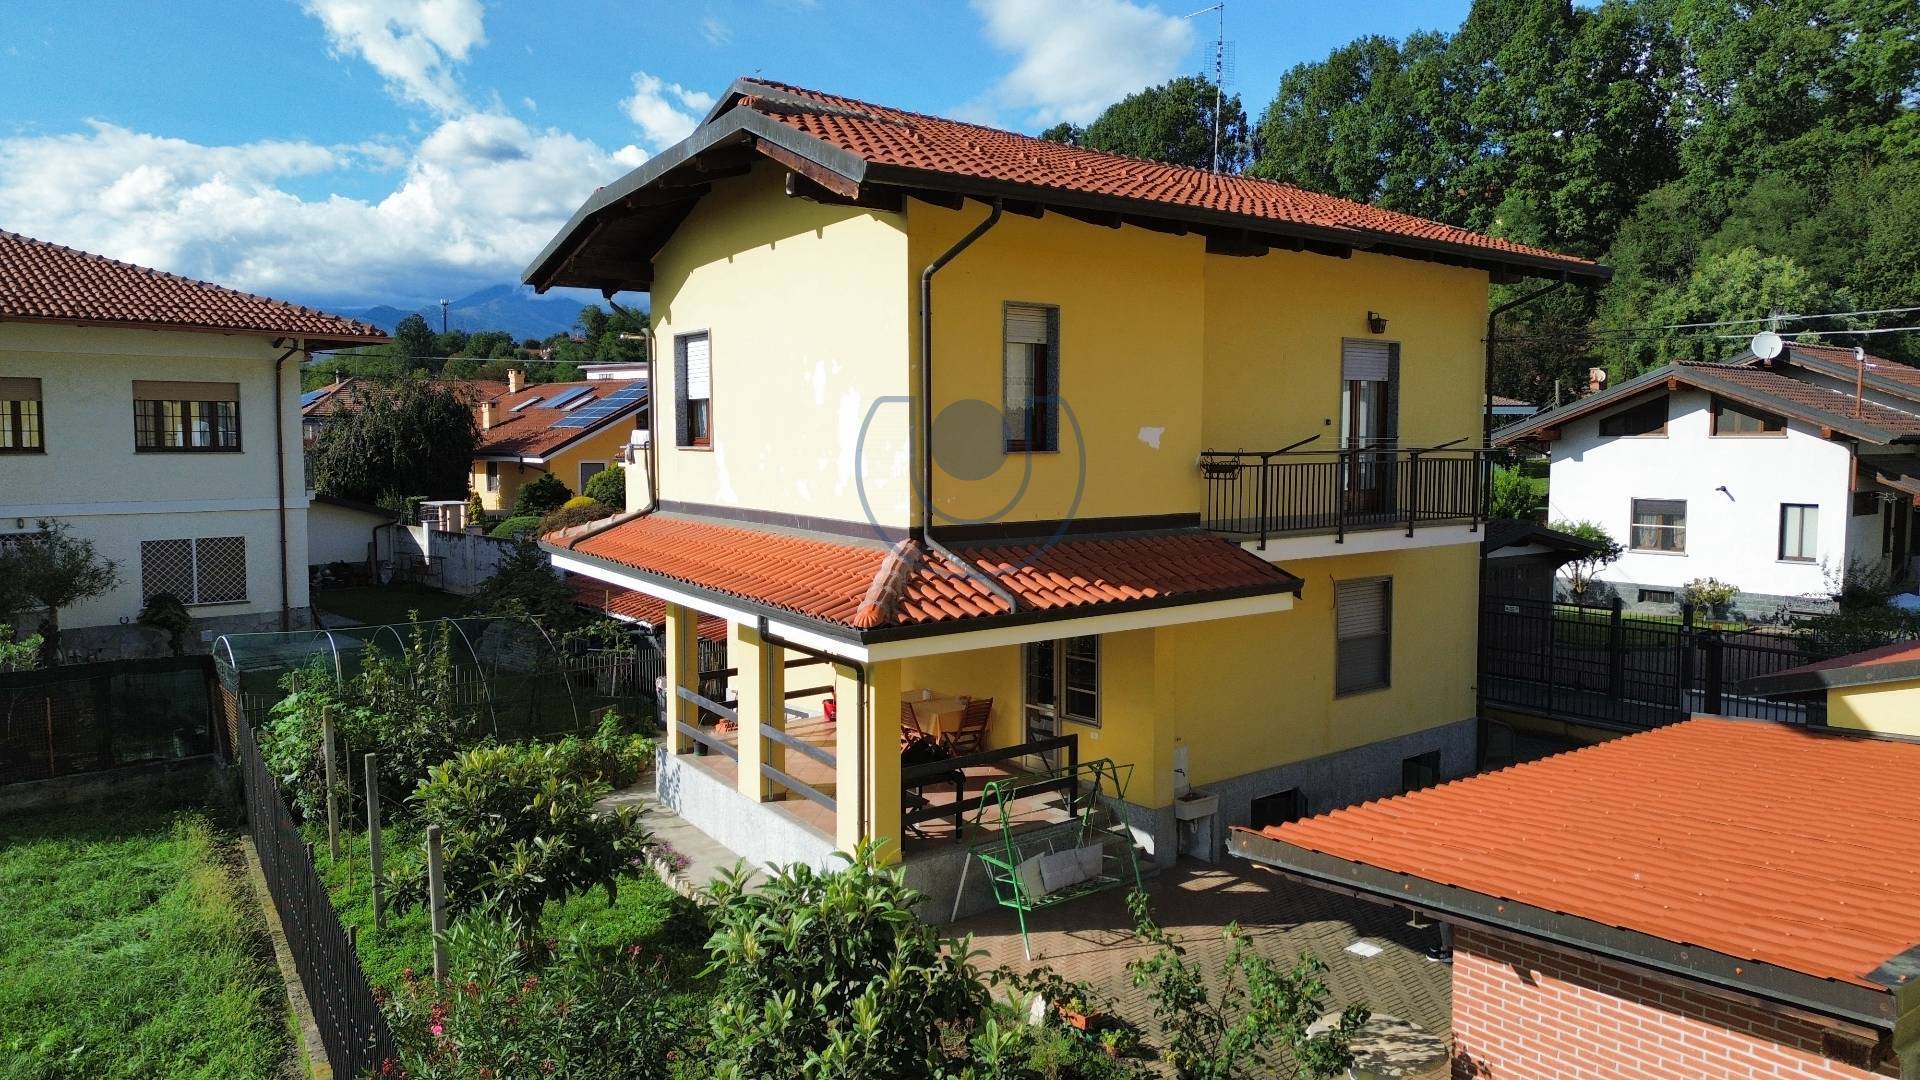 Villa Bifamiliare in vendita a Ciriè, 7 locali, zona Località: Residenziale, prezzo € 320.000 | PortaleAgenzieImmobiliari.it